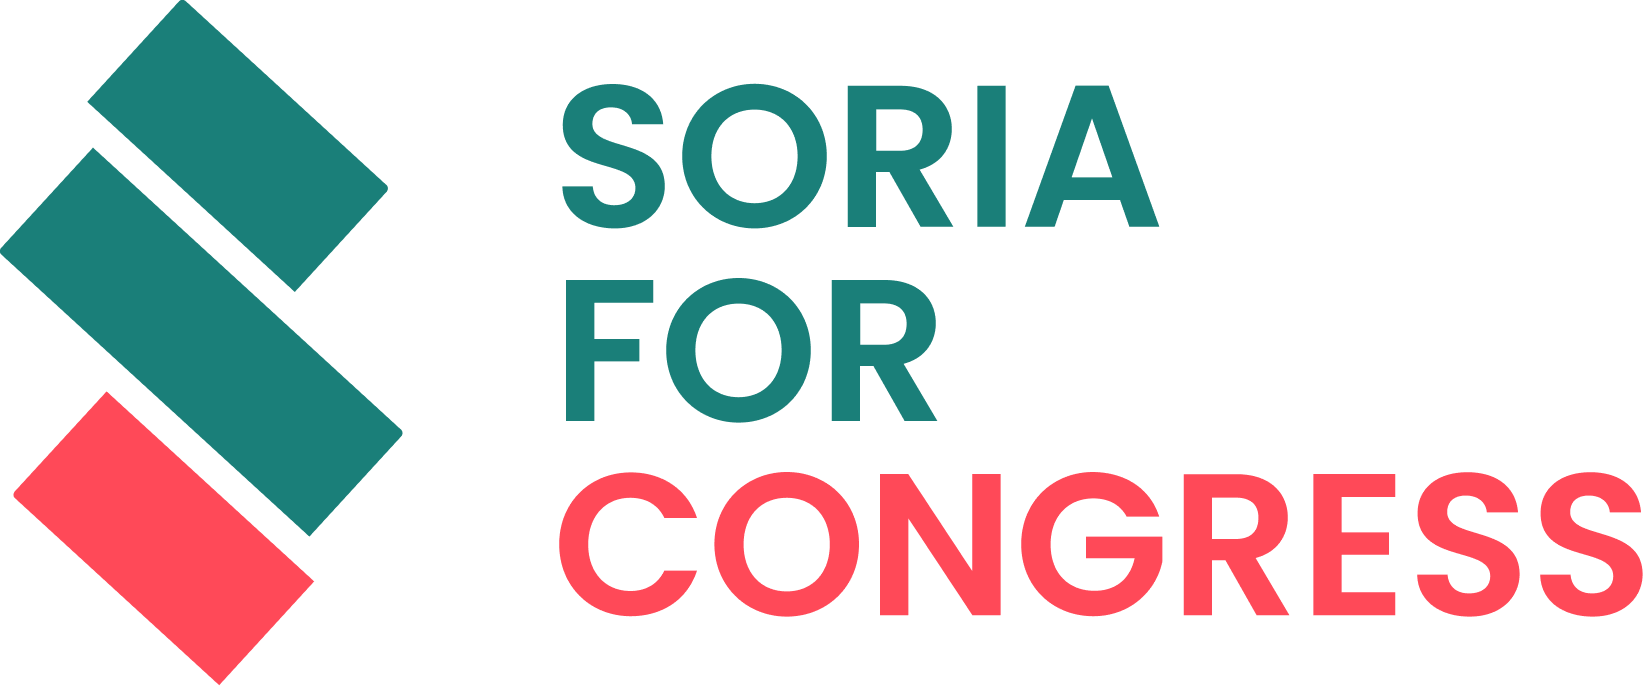 Giới thiệu về chúng tôi - Soria For Congress